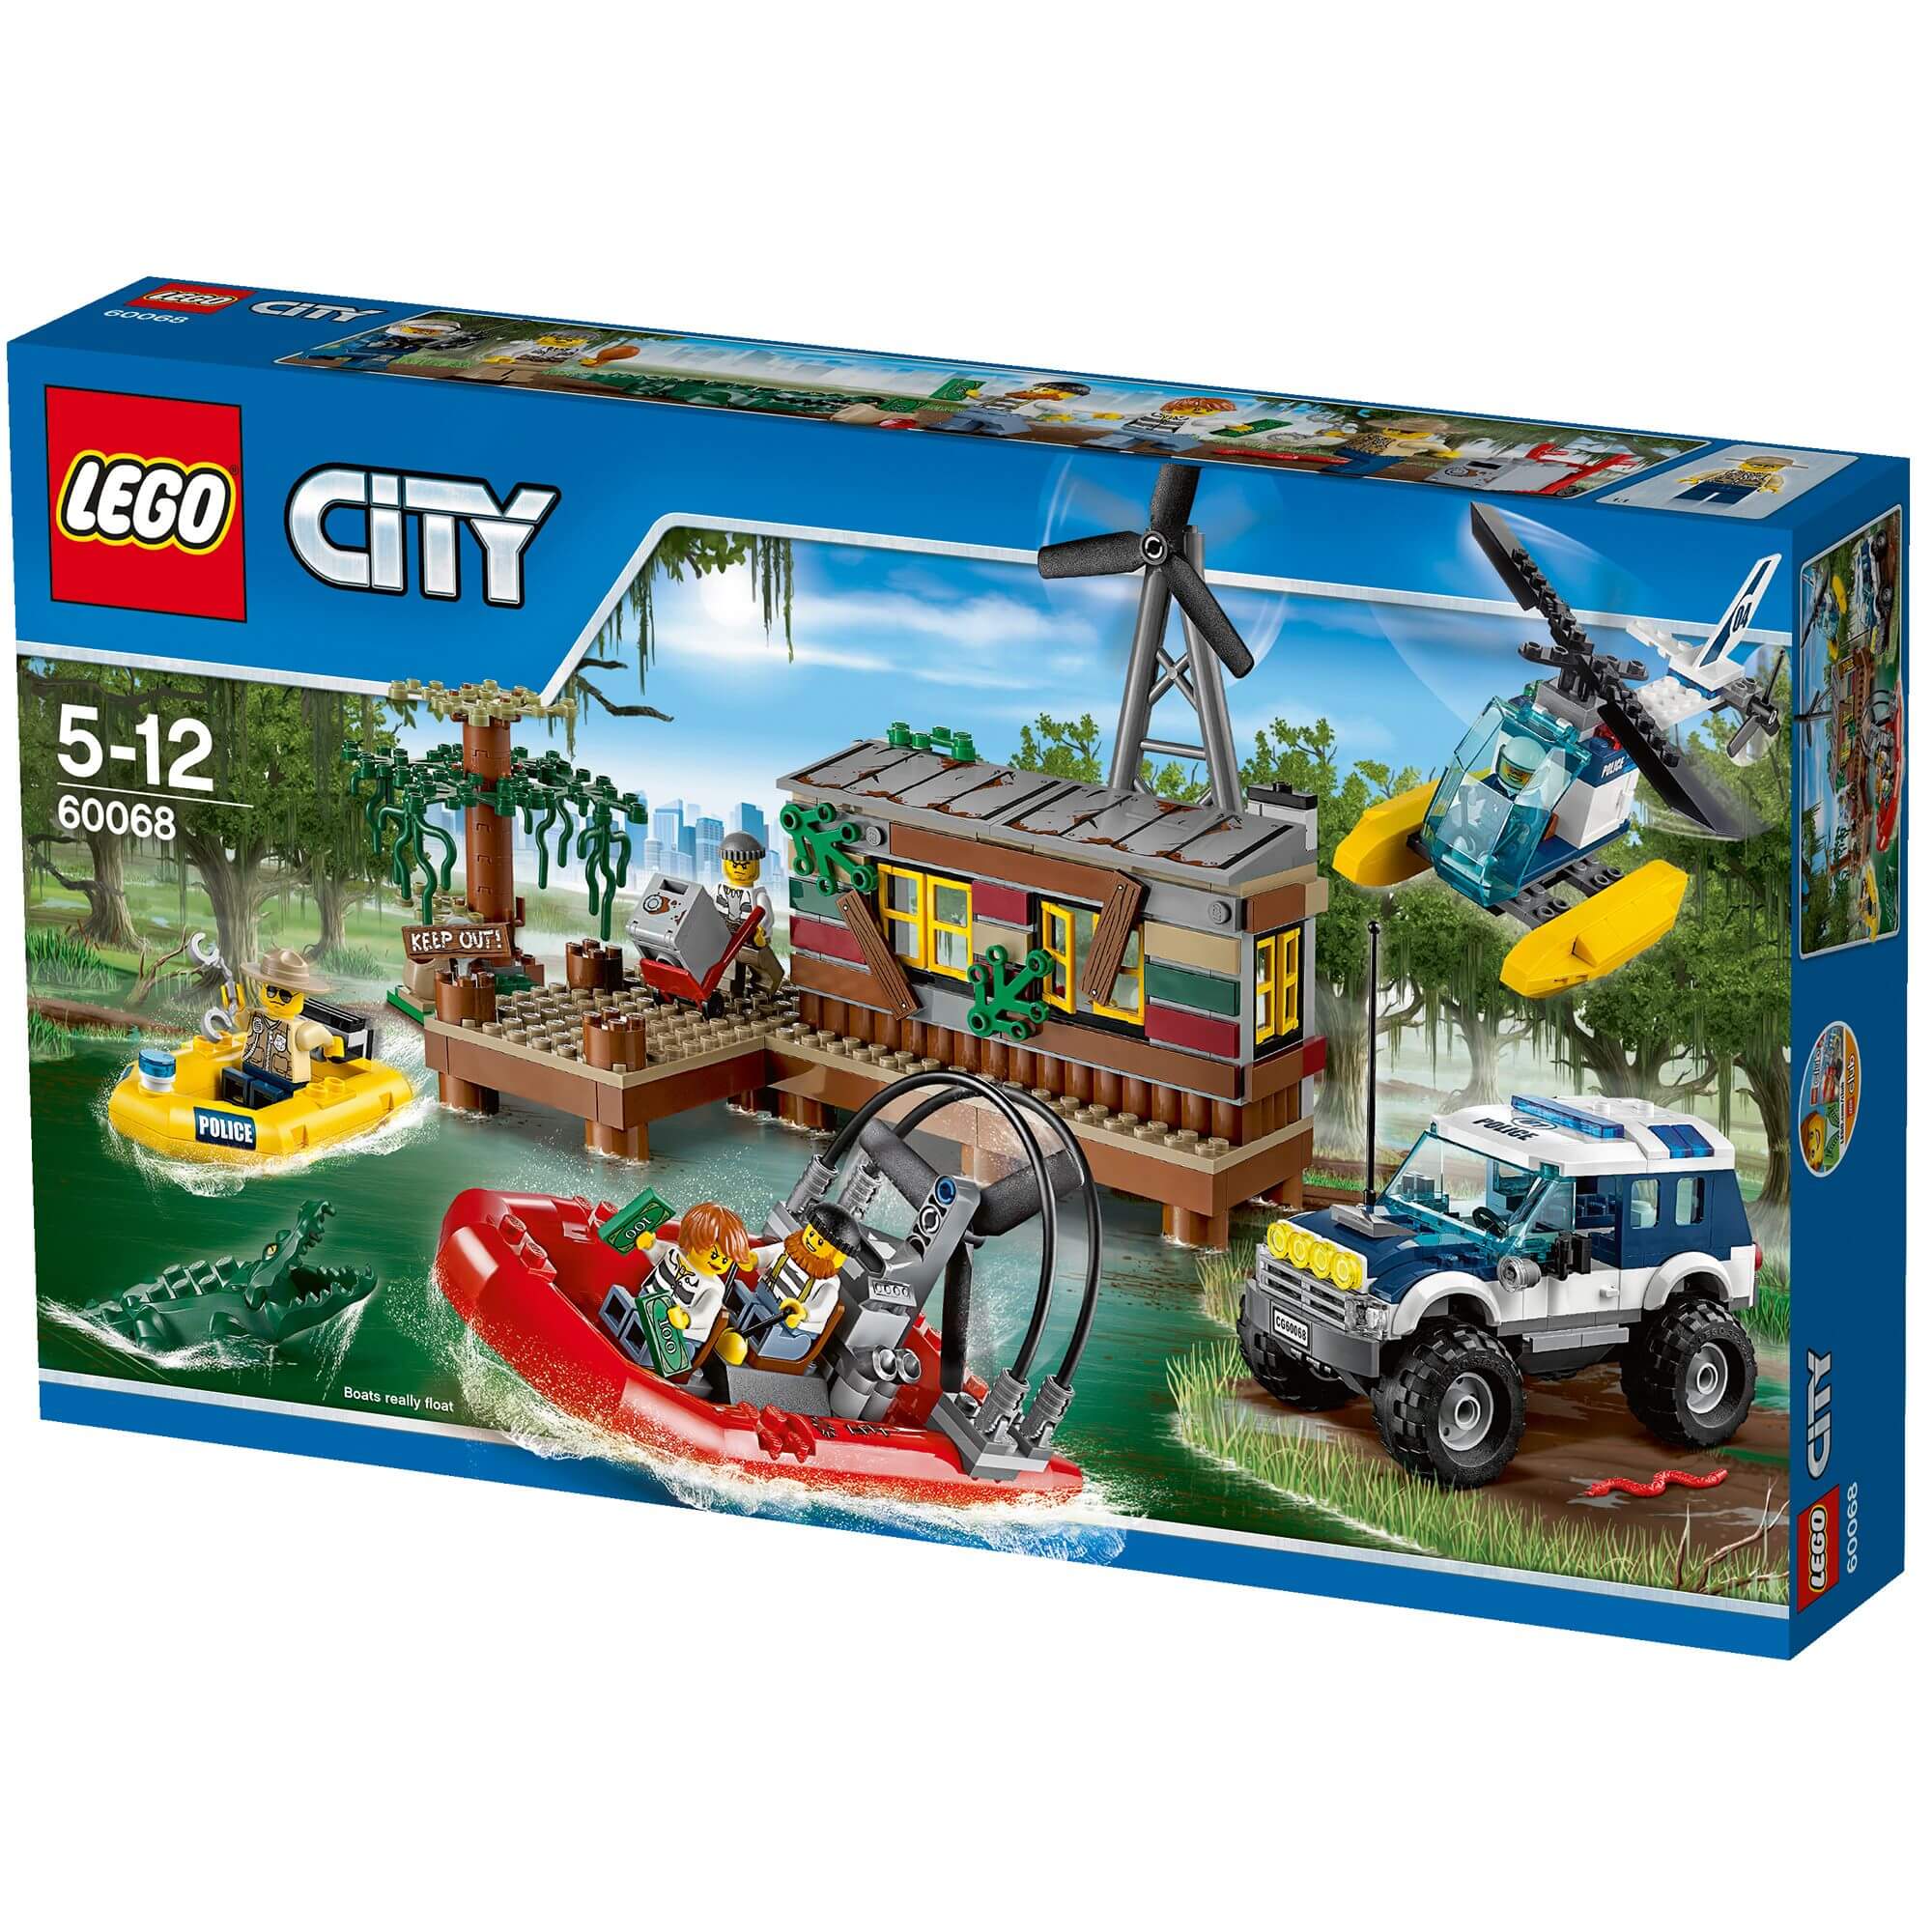  Set de constructie LEGO City Crooks` Hideout 